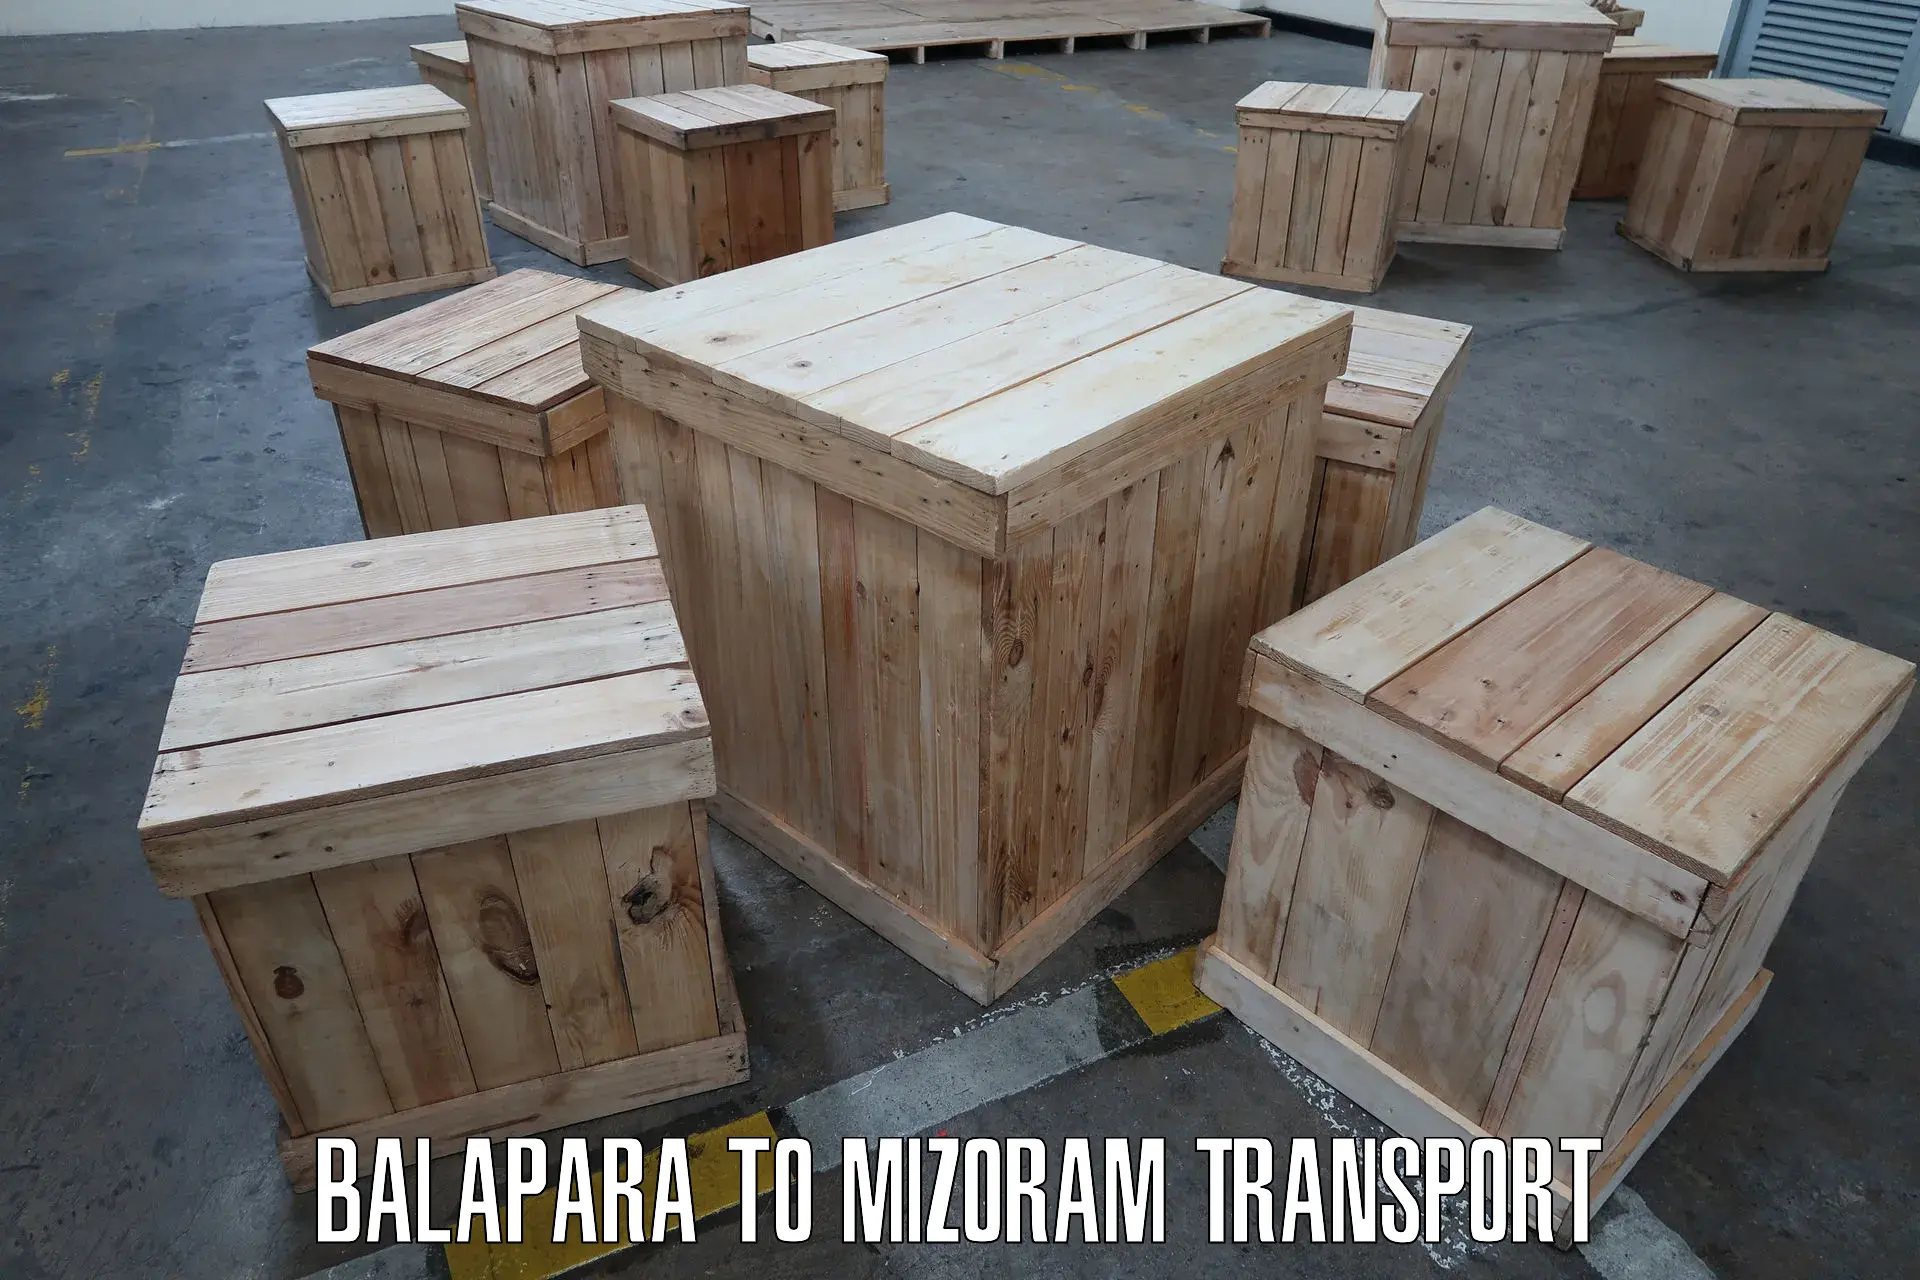 Bike transport service Balapara to Thenzawl